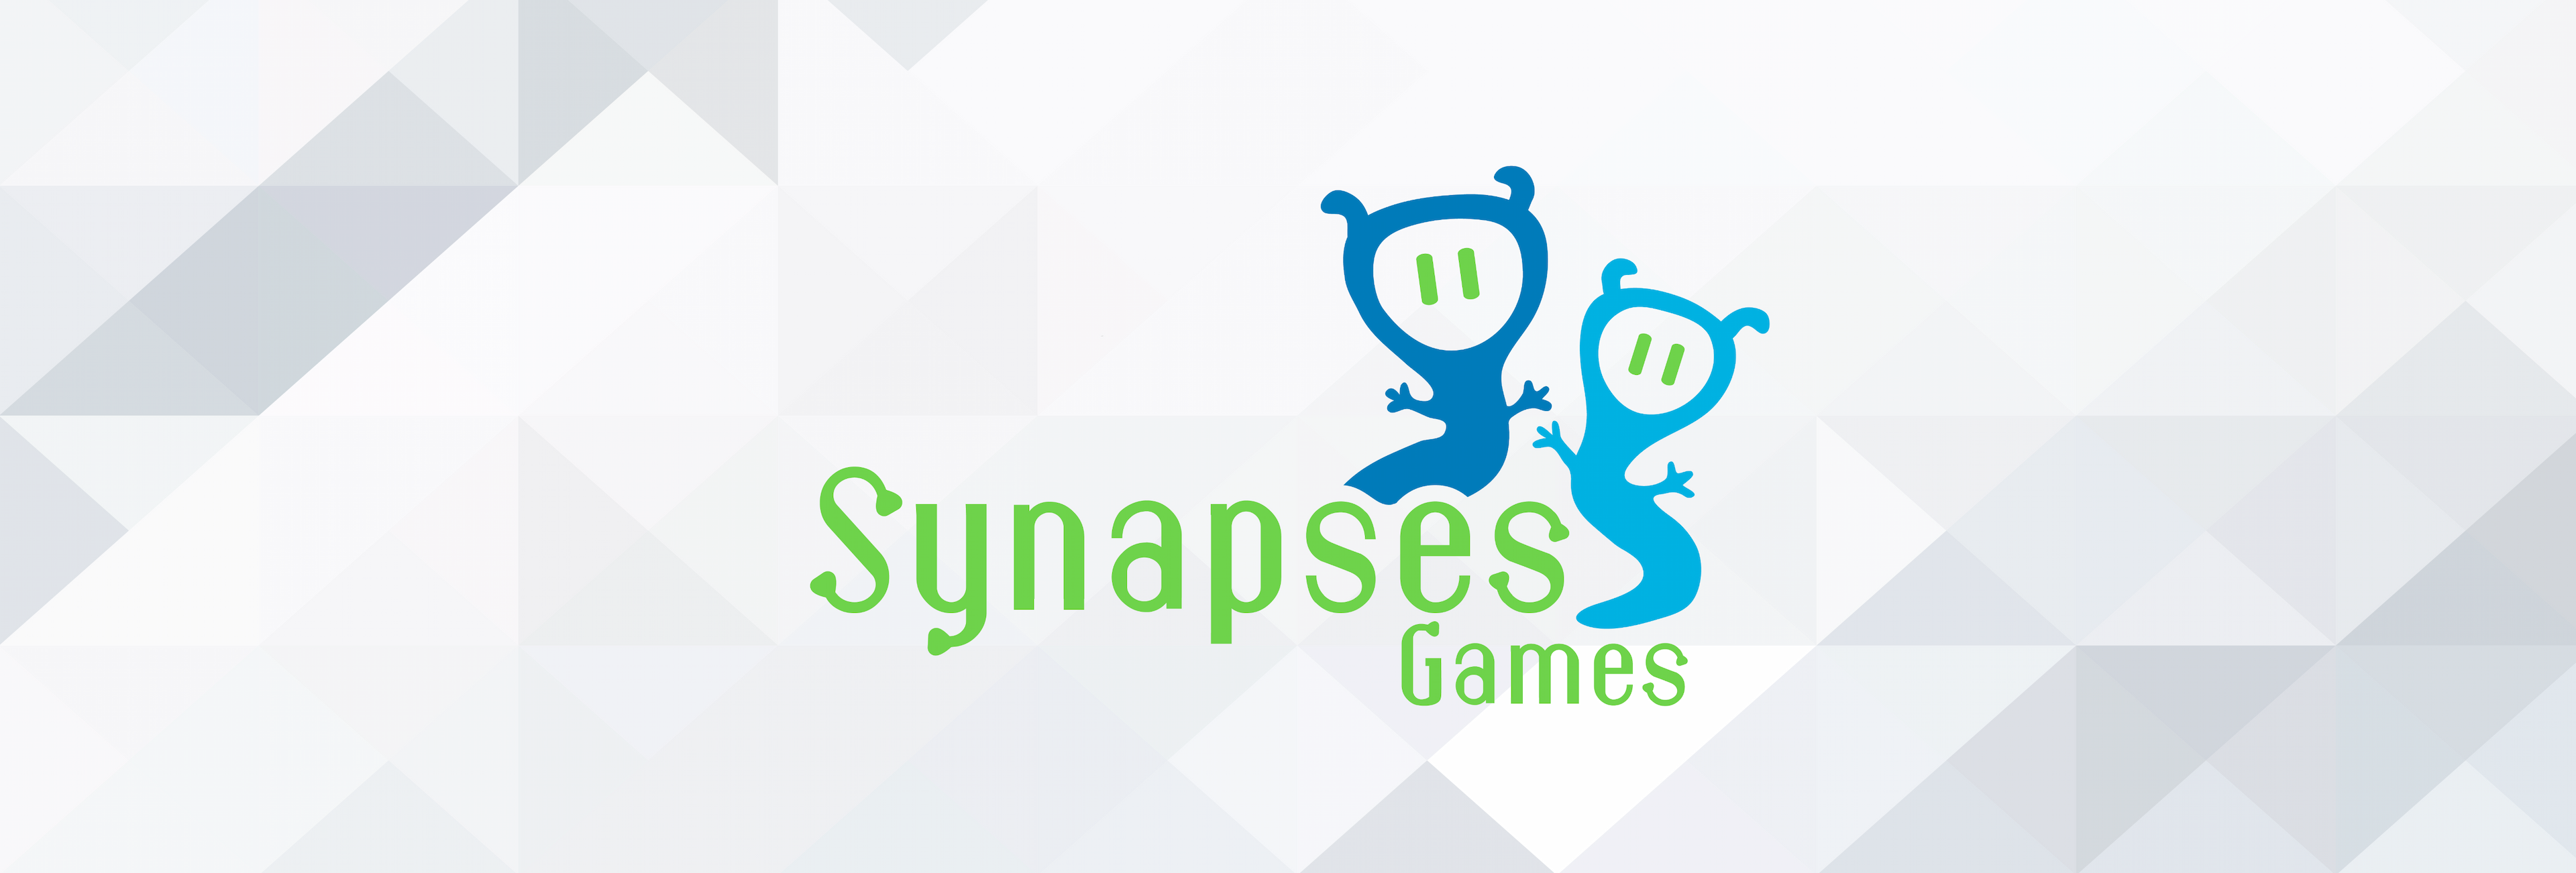 Synapses Games : Du noeud ludique aux neuro-jeux !